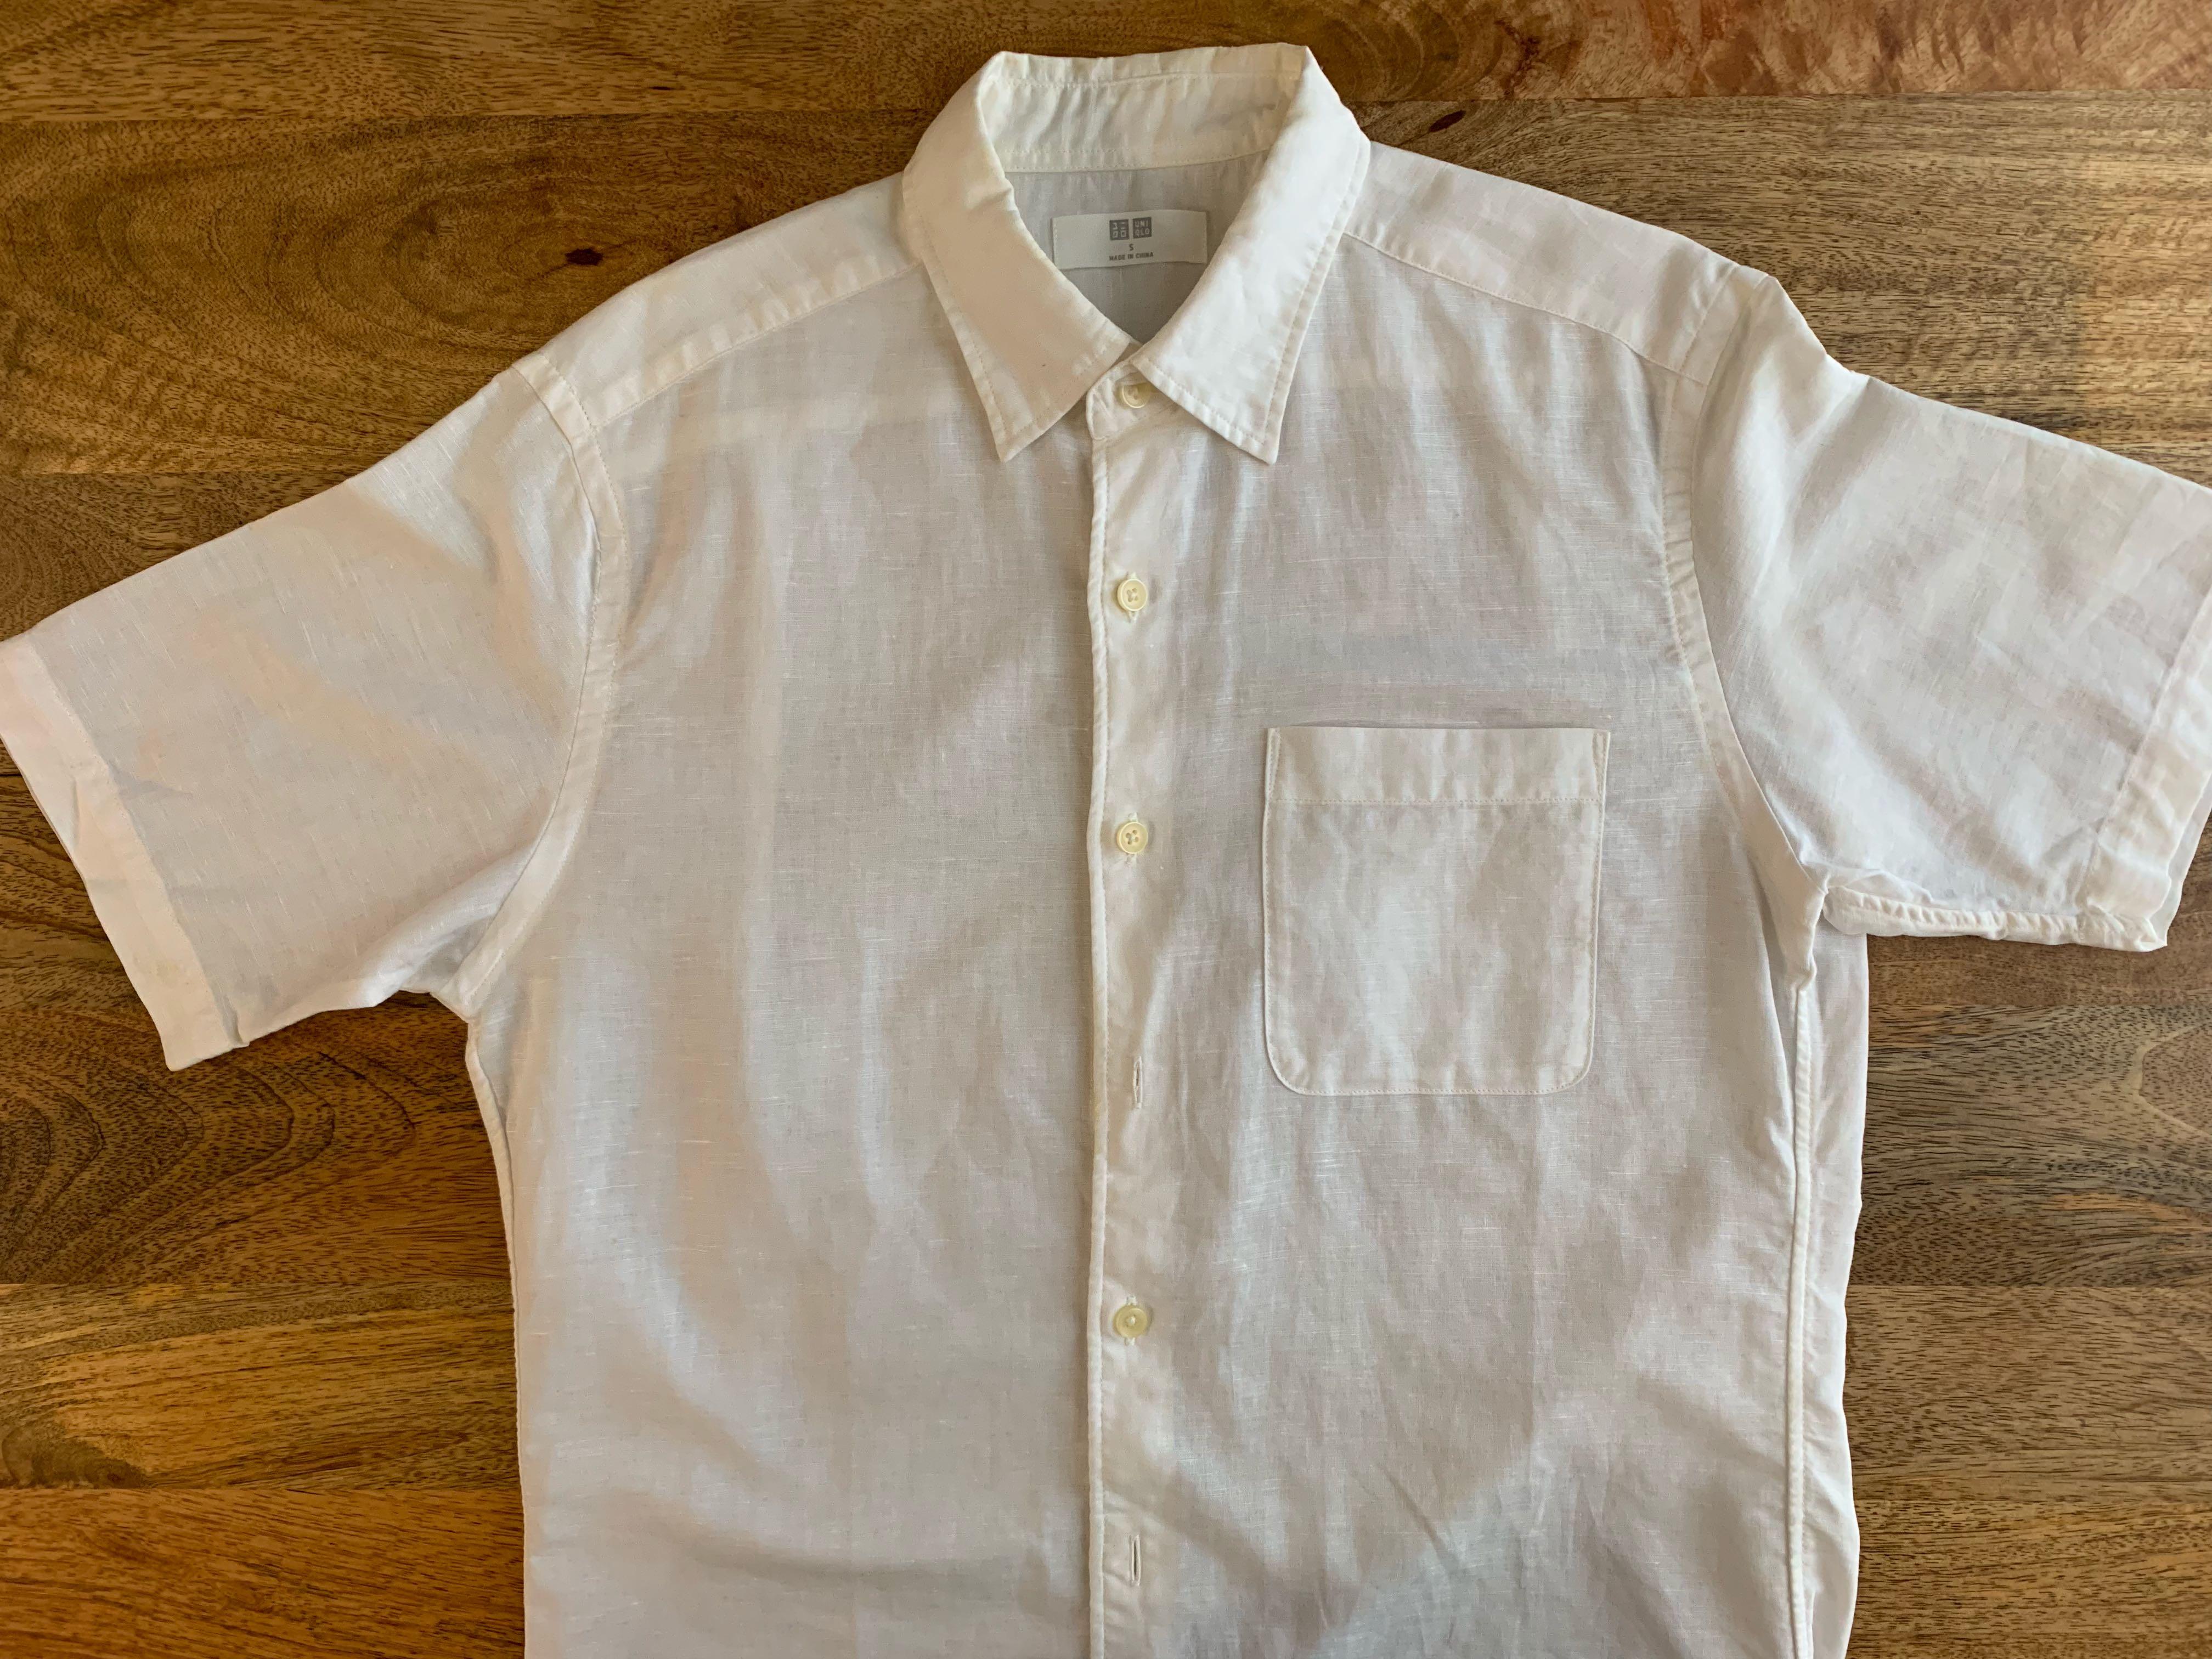 للمساهمة تربية قابل للتعديل Uniqlo White Linen Shirt Analogdevelopment Com